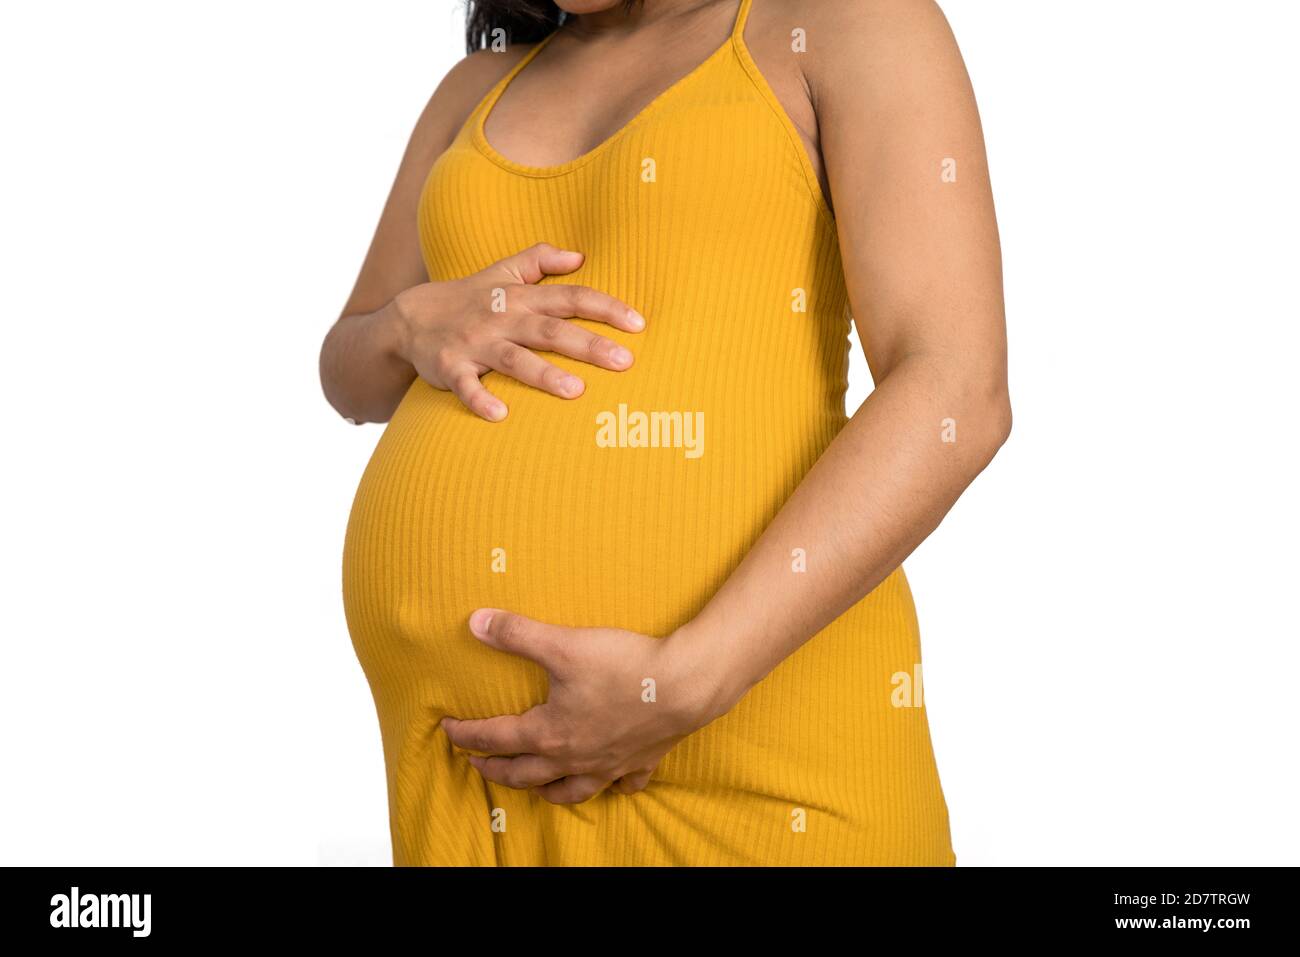 Nahaufnahme der schwangeren Frau, die ihren großen Bauch berührt. Schwangerschafts-, Mutterschafts- und Erwartungskonzept. Stockfoto